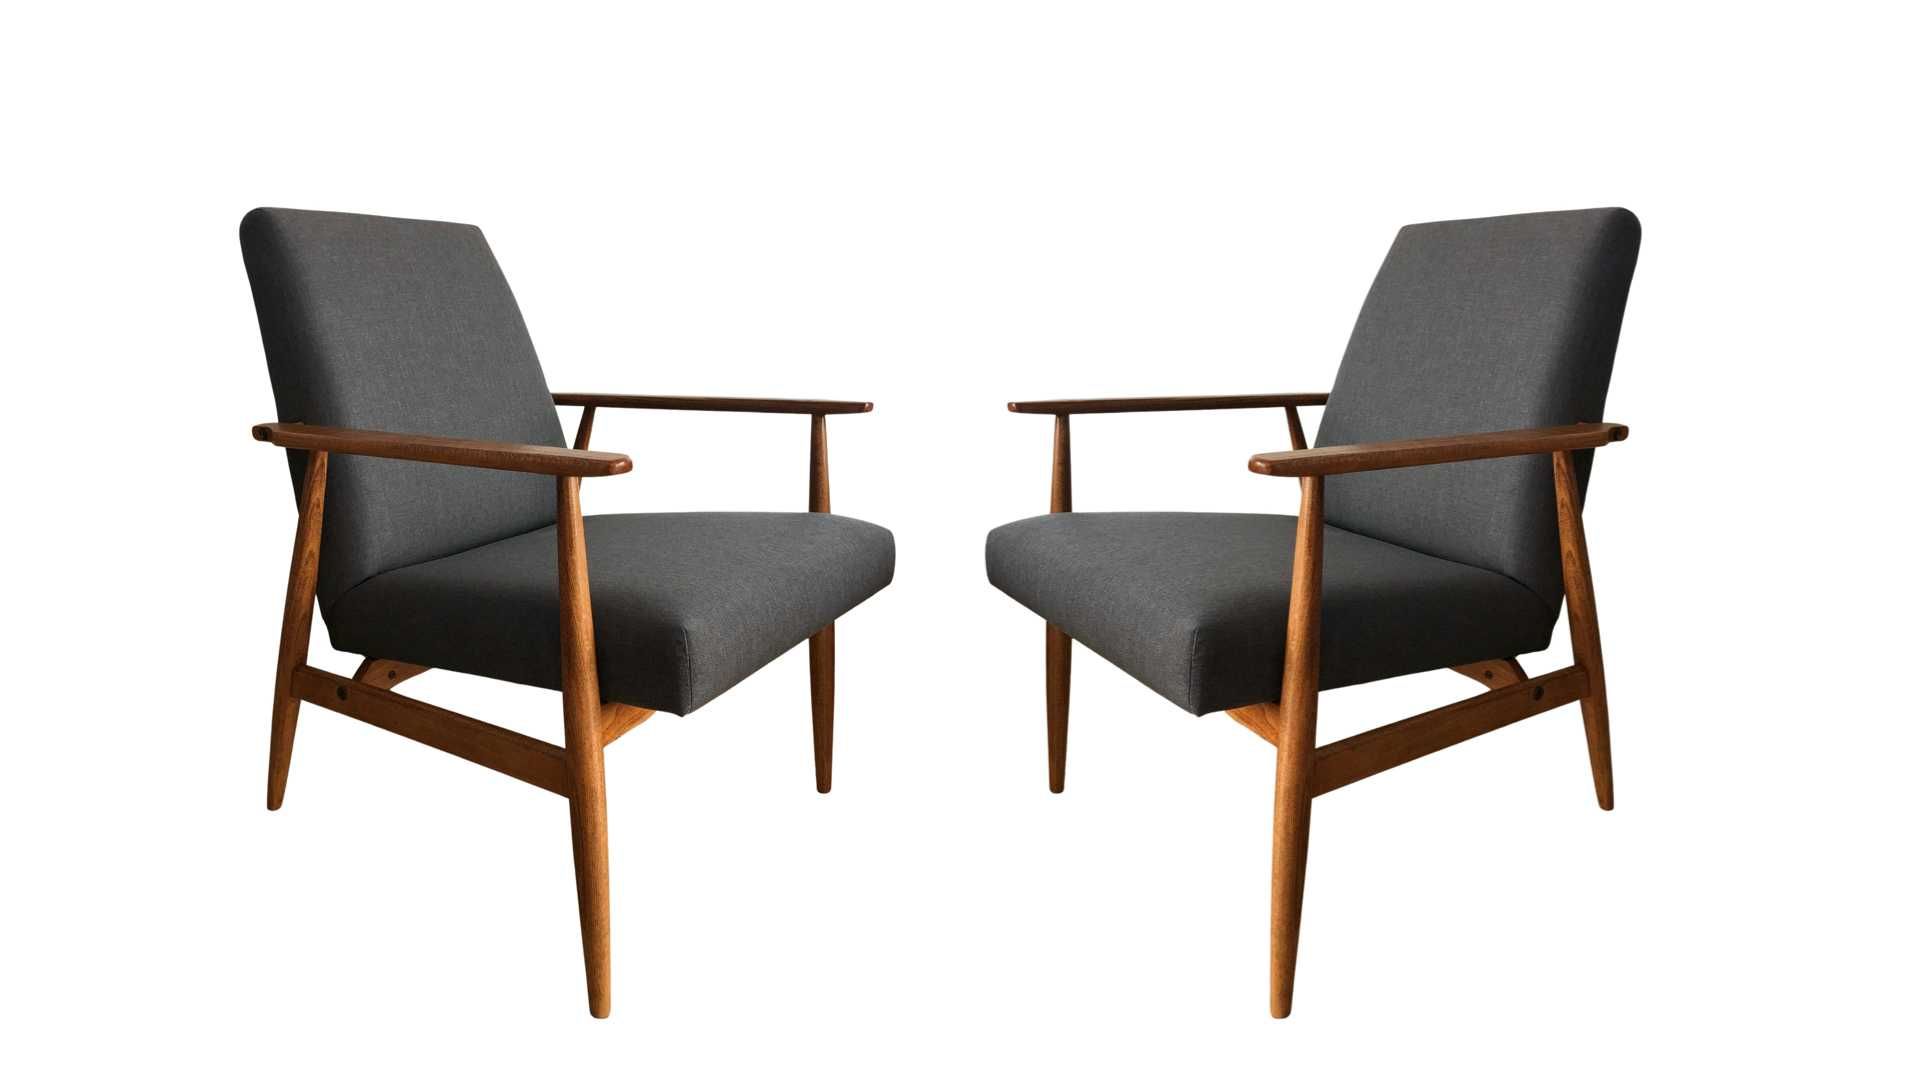 Fotele prl po renowacji, H. Lis, lata 60te, duńska tkanina Kvadrat